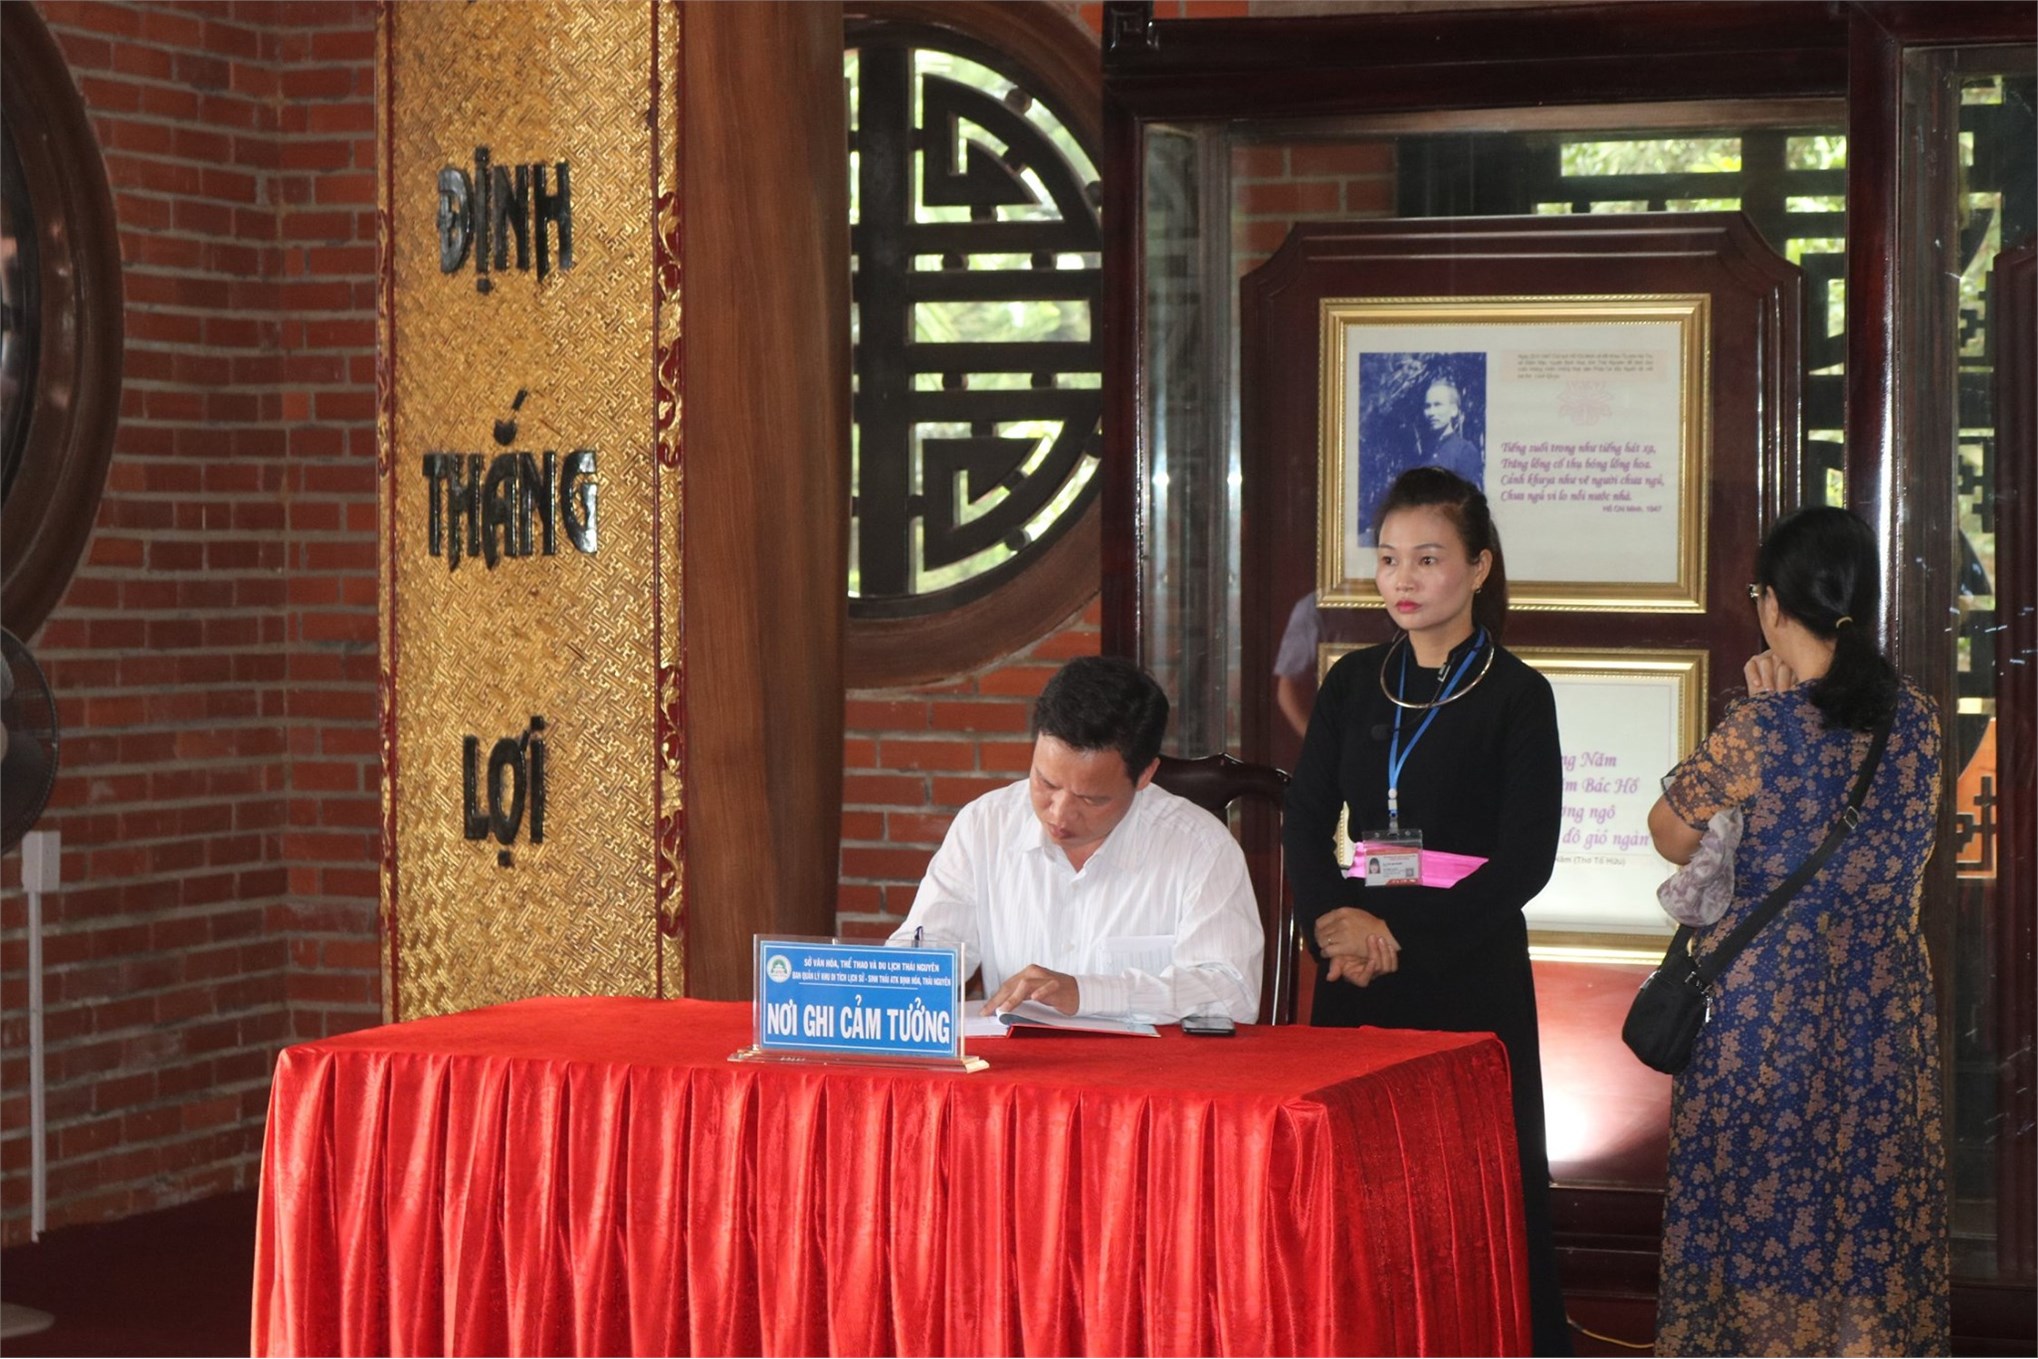 Chi bộ Điện tử tham quan học tập tại Thái Nguyên và Tuyên Quang năm 2019